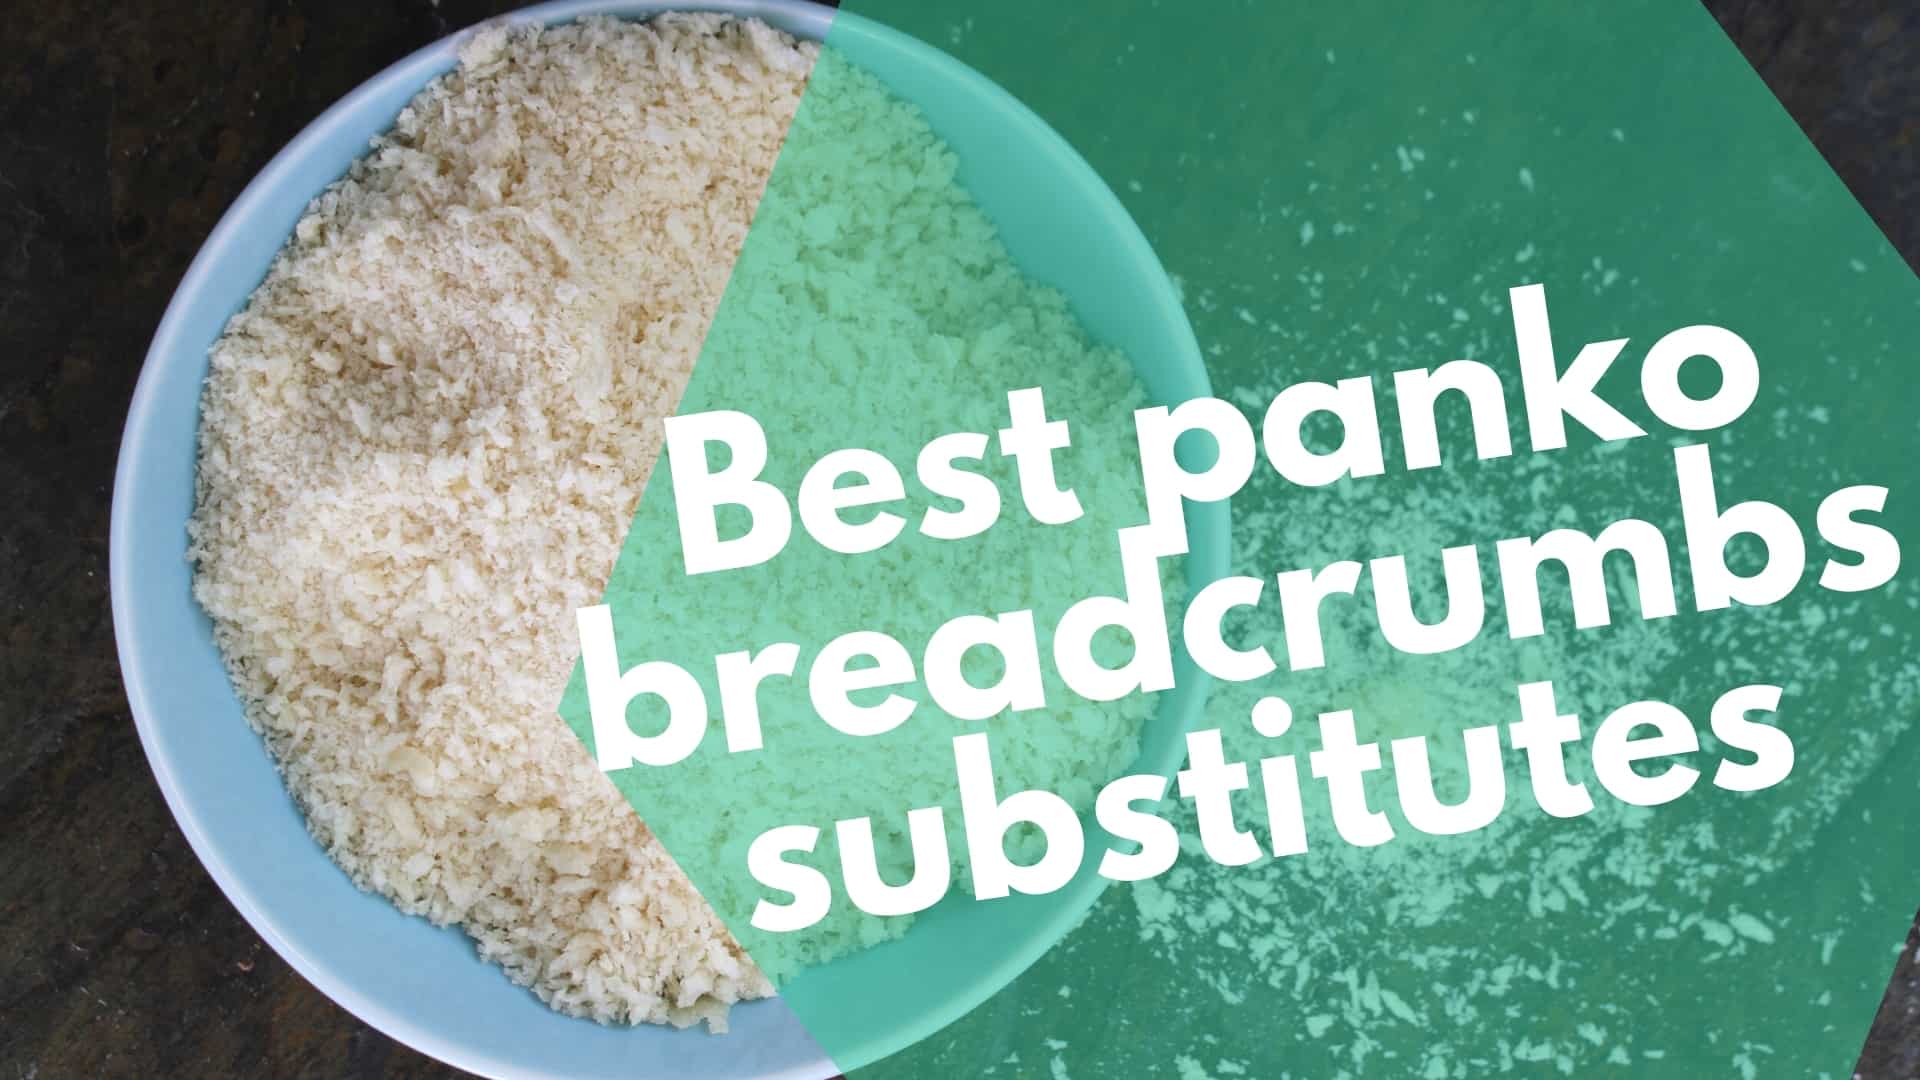 Best panko breadcrumbs substitutes